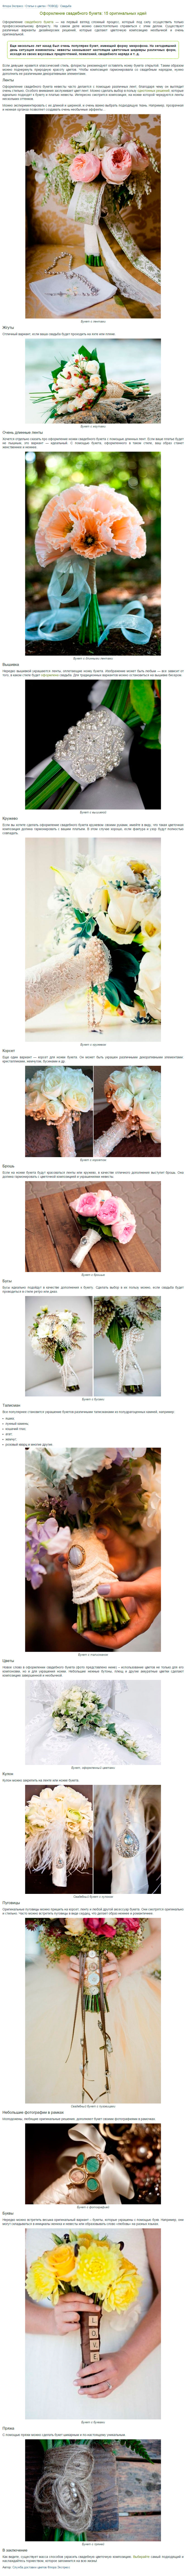 Пример статьи для интернет-магазина цветов